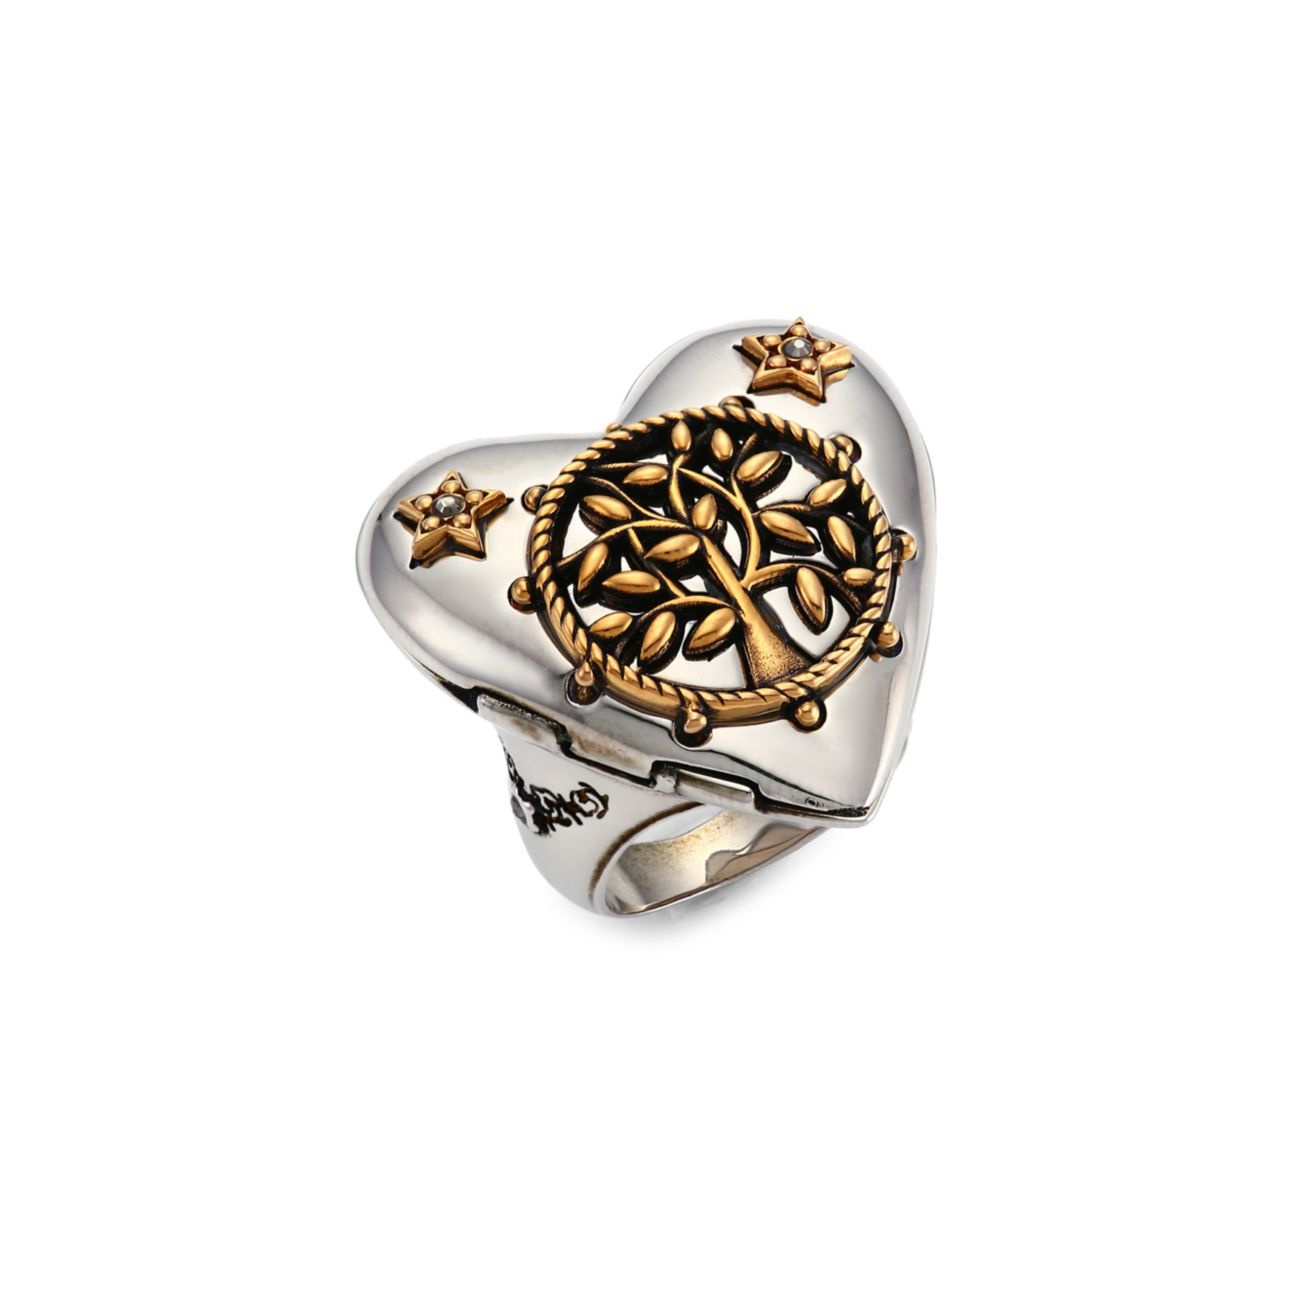 Кольцо-медальон в форме сердца Alexander McQueen